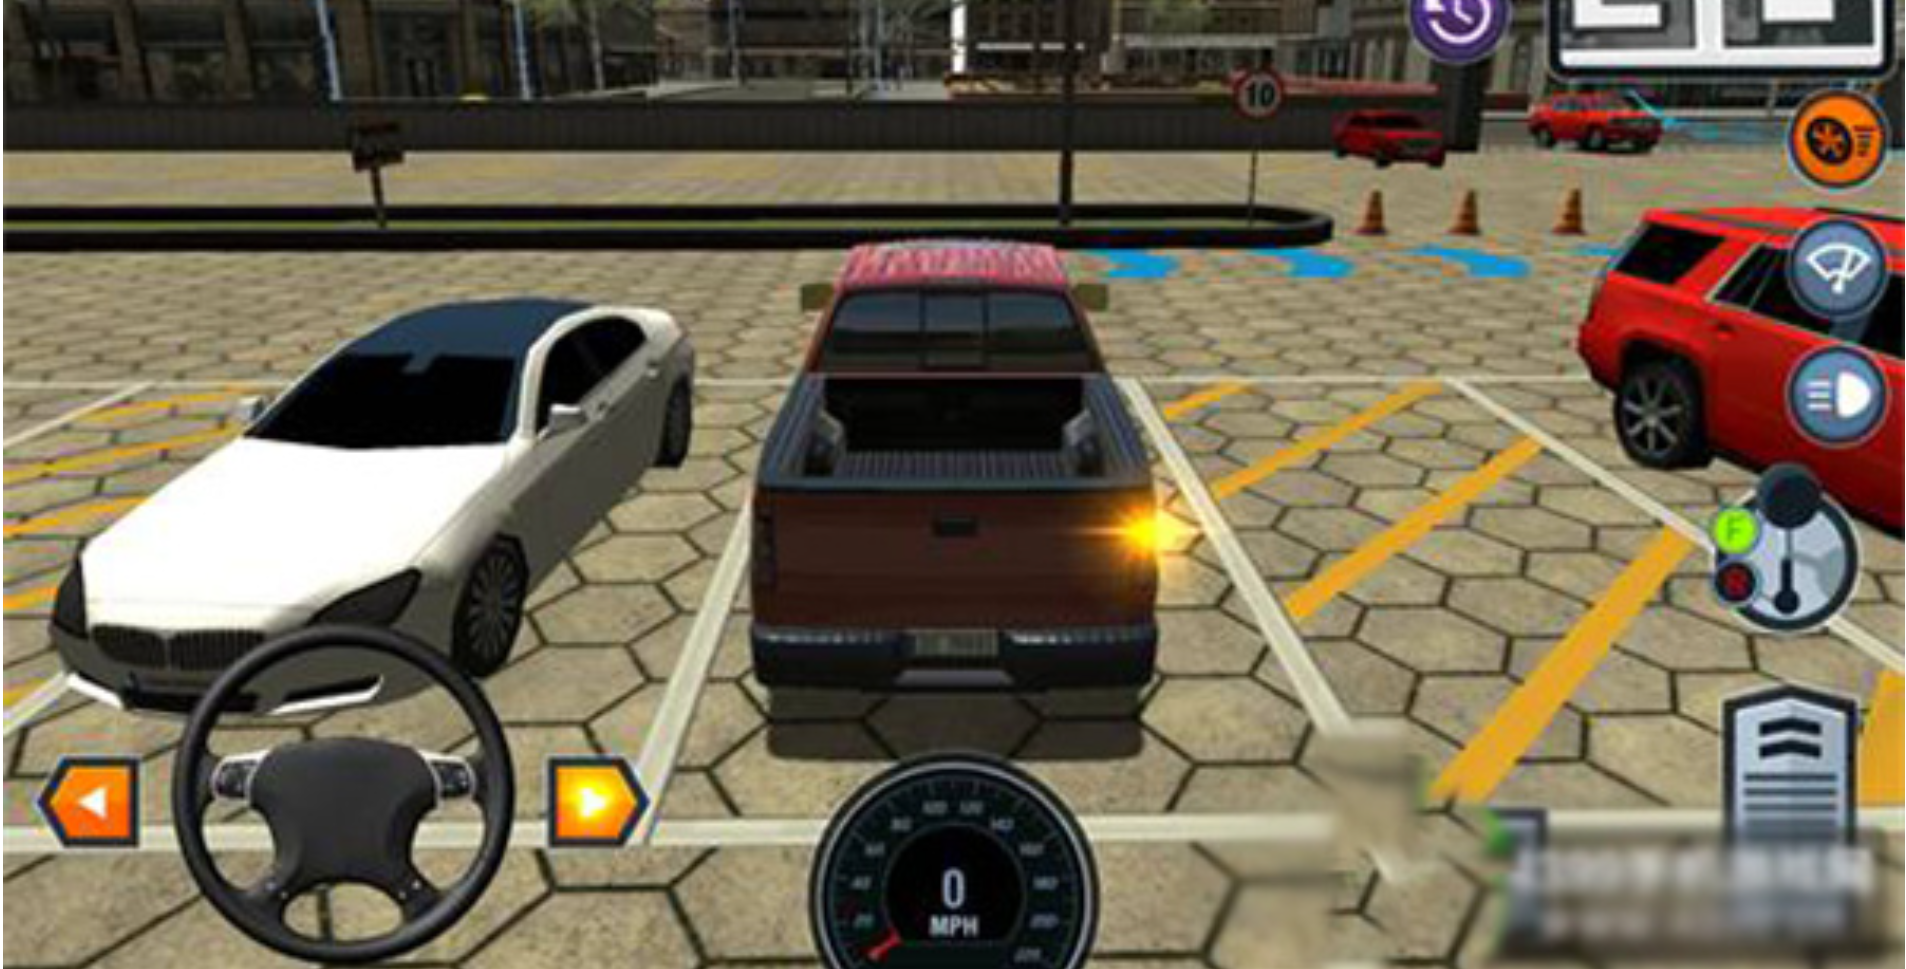 驾校模拟游戏官方版